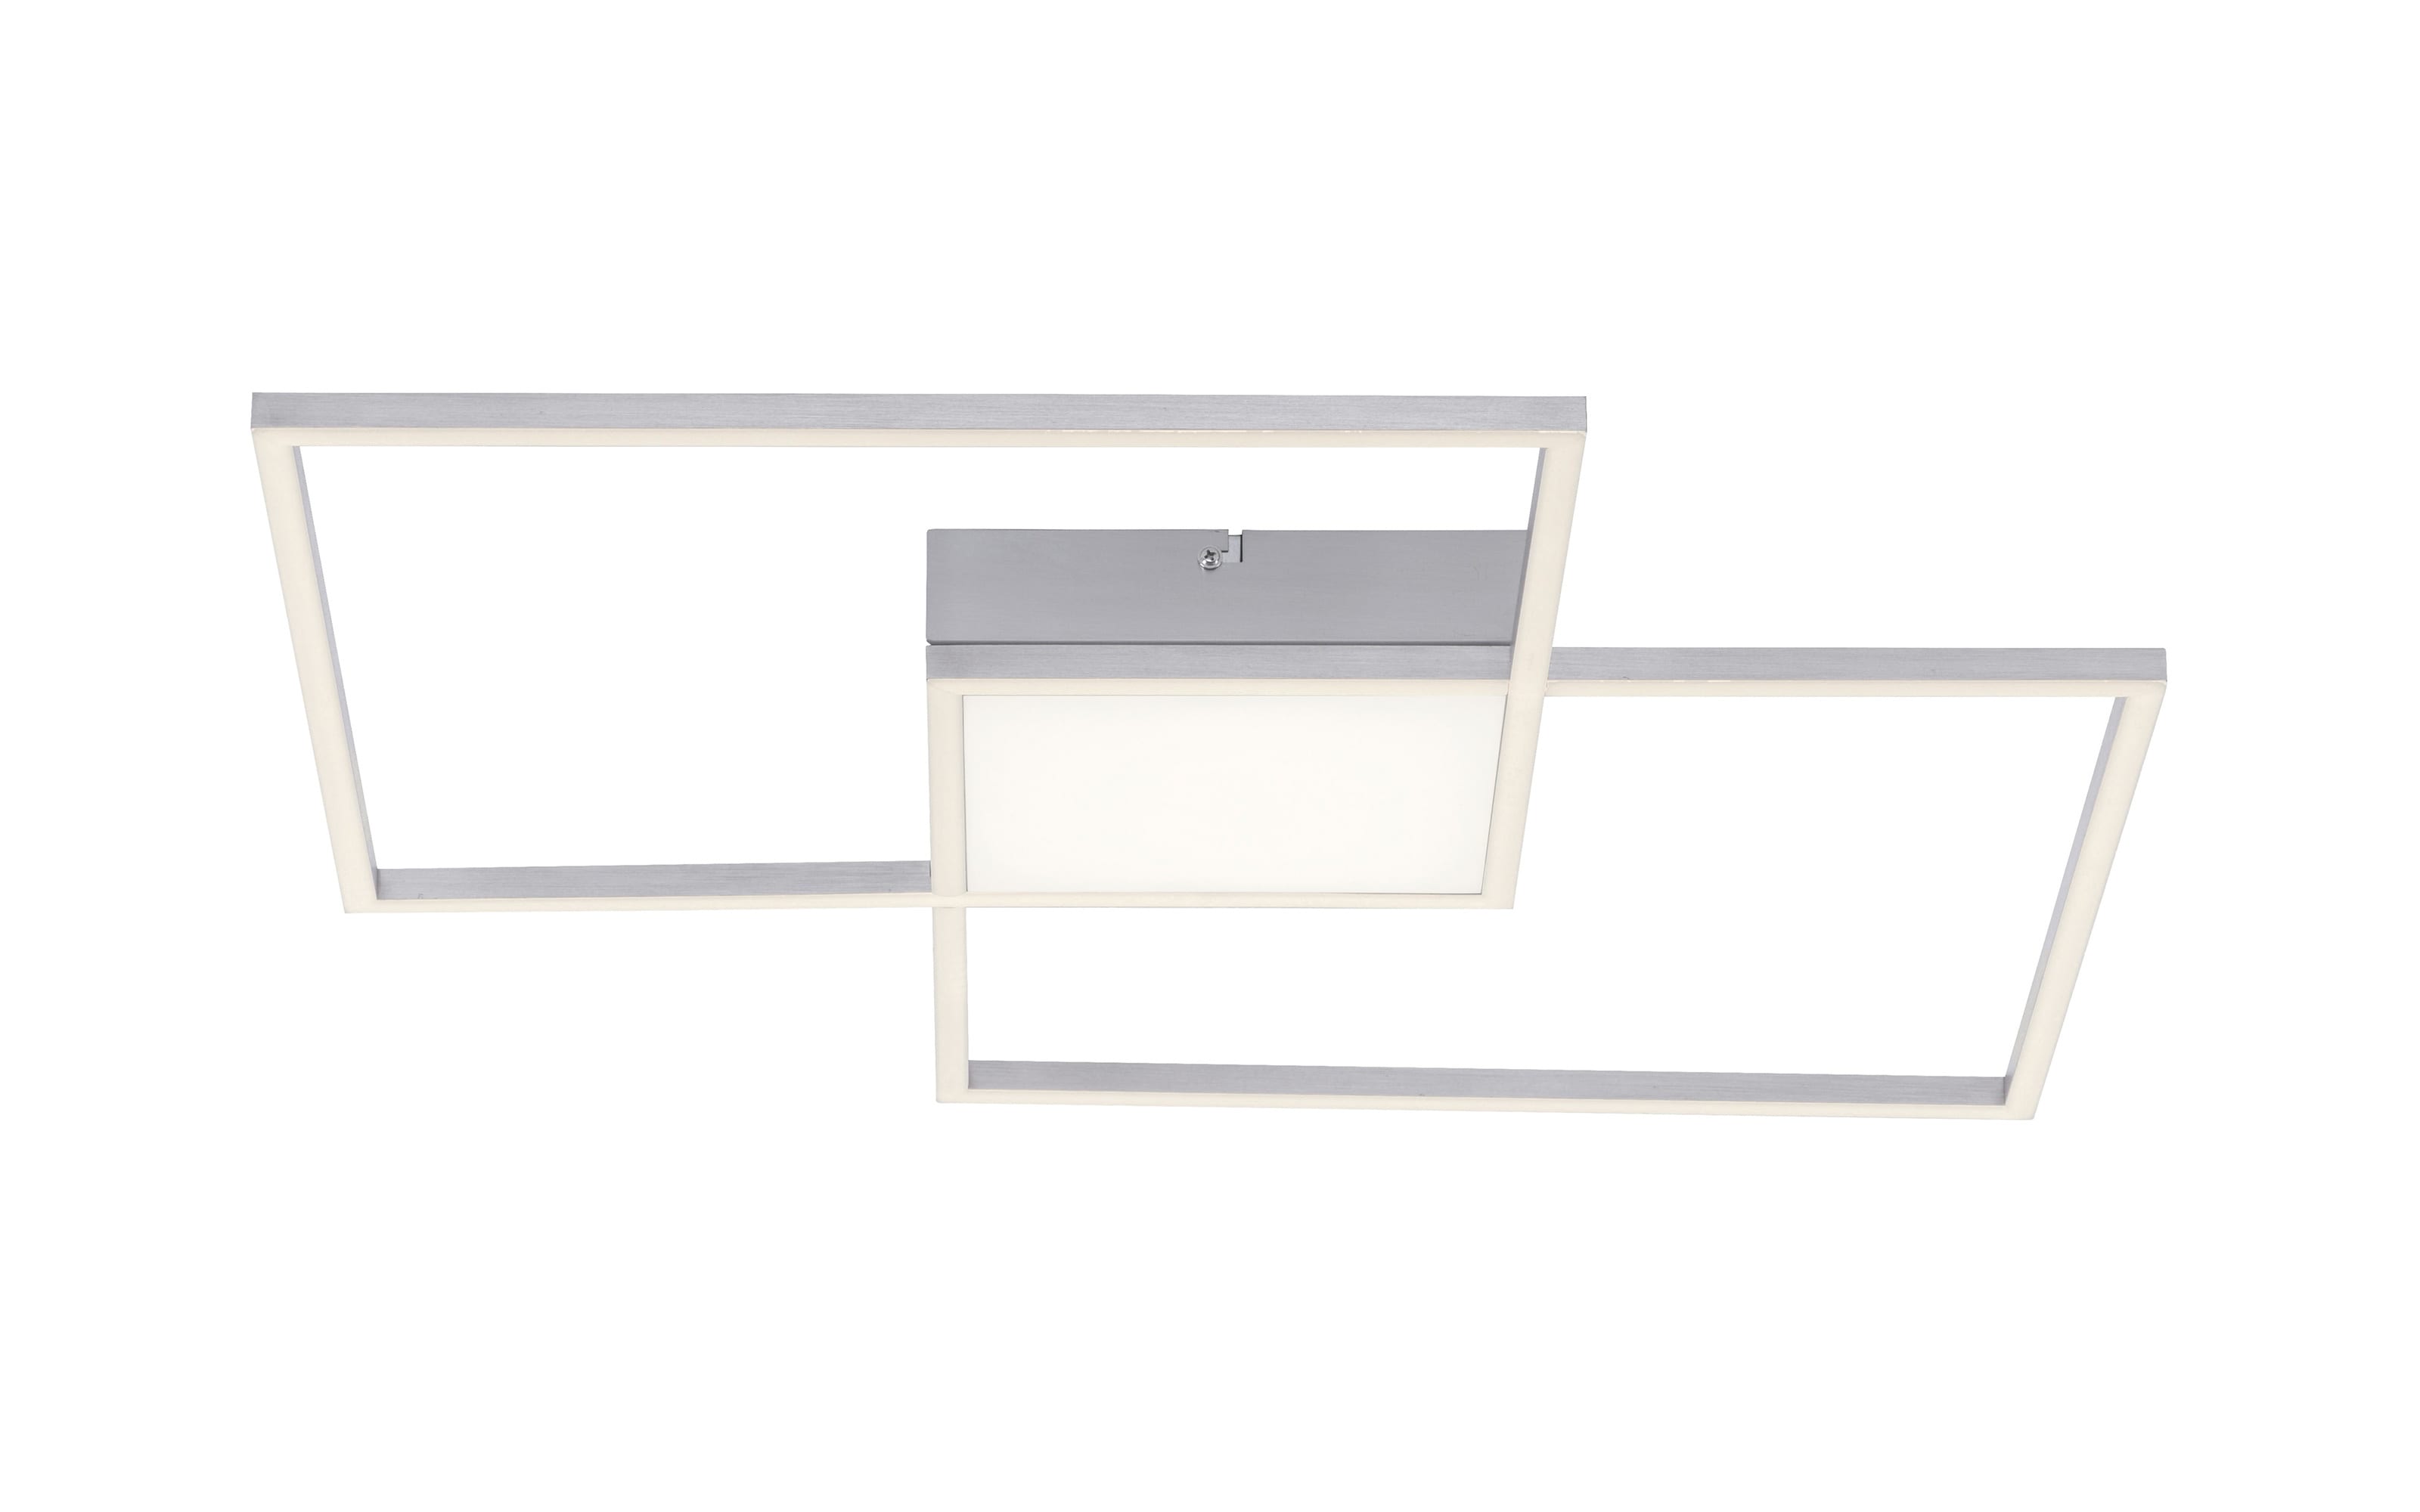 LED-Deckenleuchte Asmin CCT in stahlfarbig, 60 x 60 cm